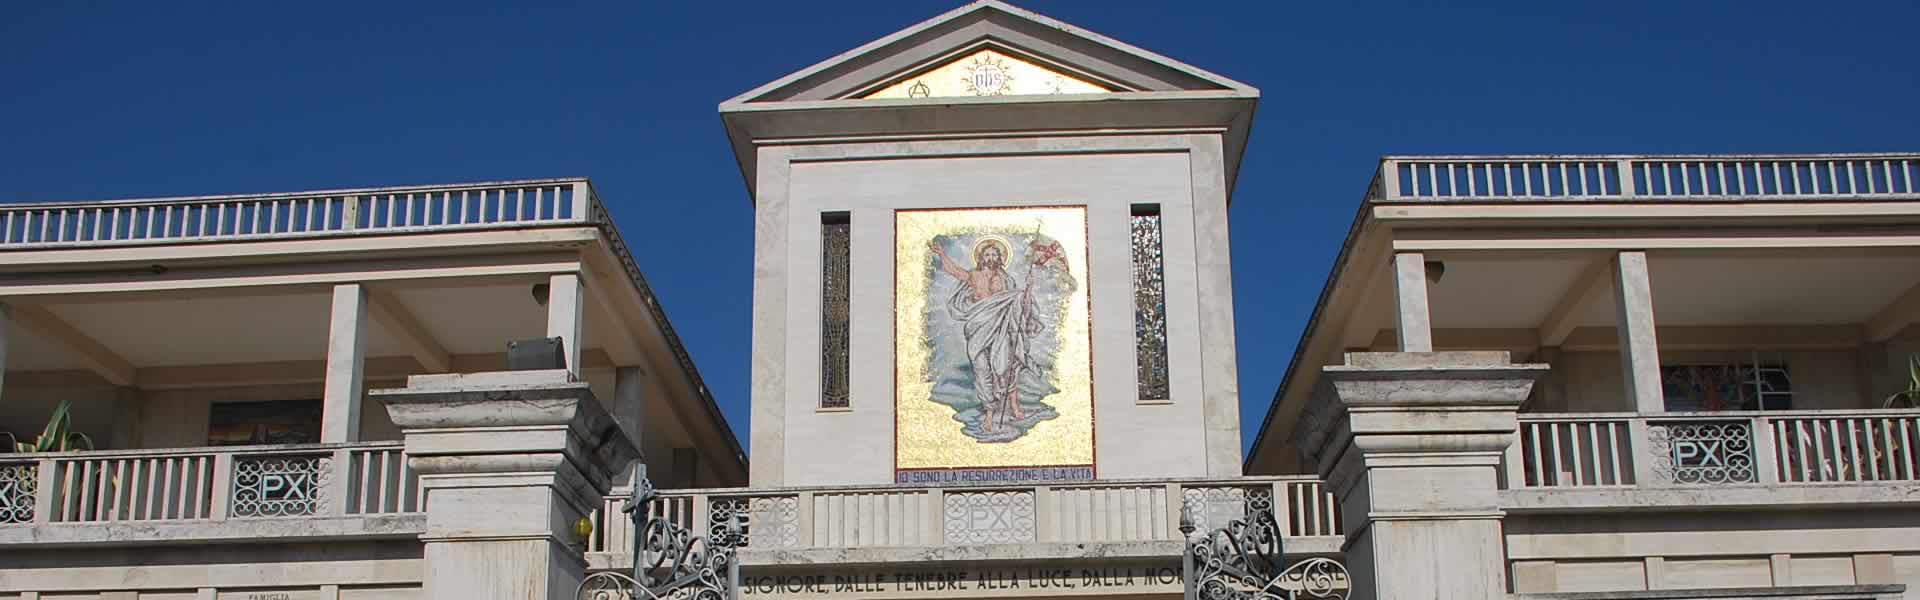 Cimitero San Benedetto